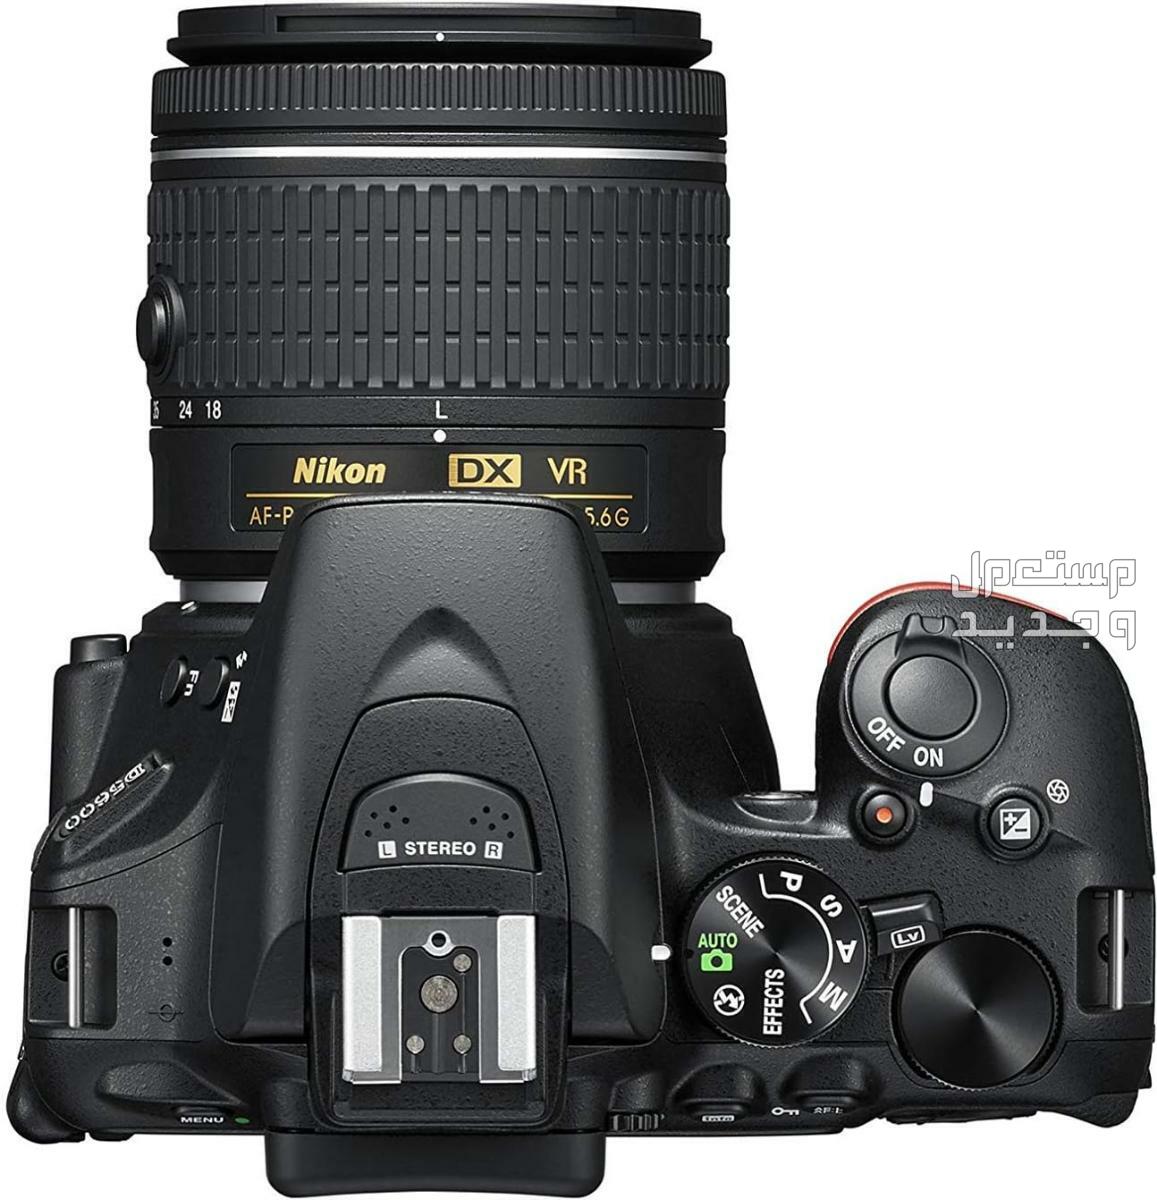 10 كاميرات تصوير ماركات عالمية بأسعار رخيصة في لبنان مميزات كاميرا Nikon D5600